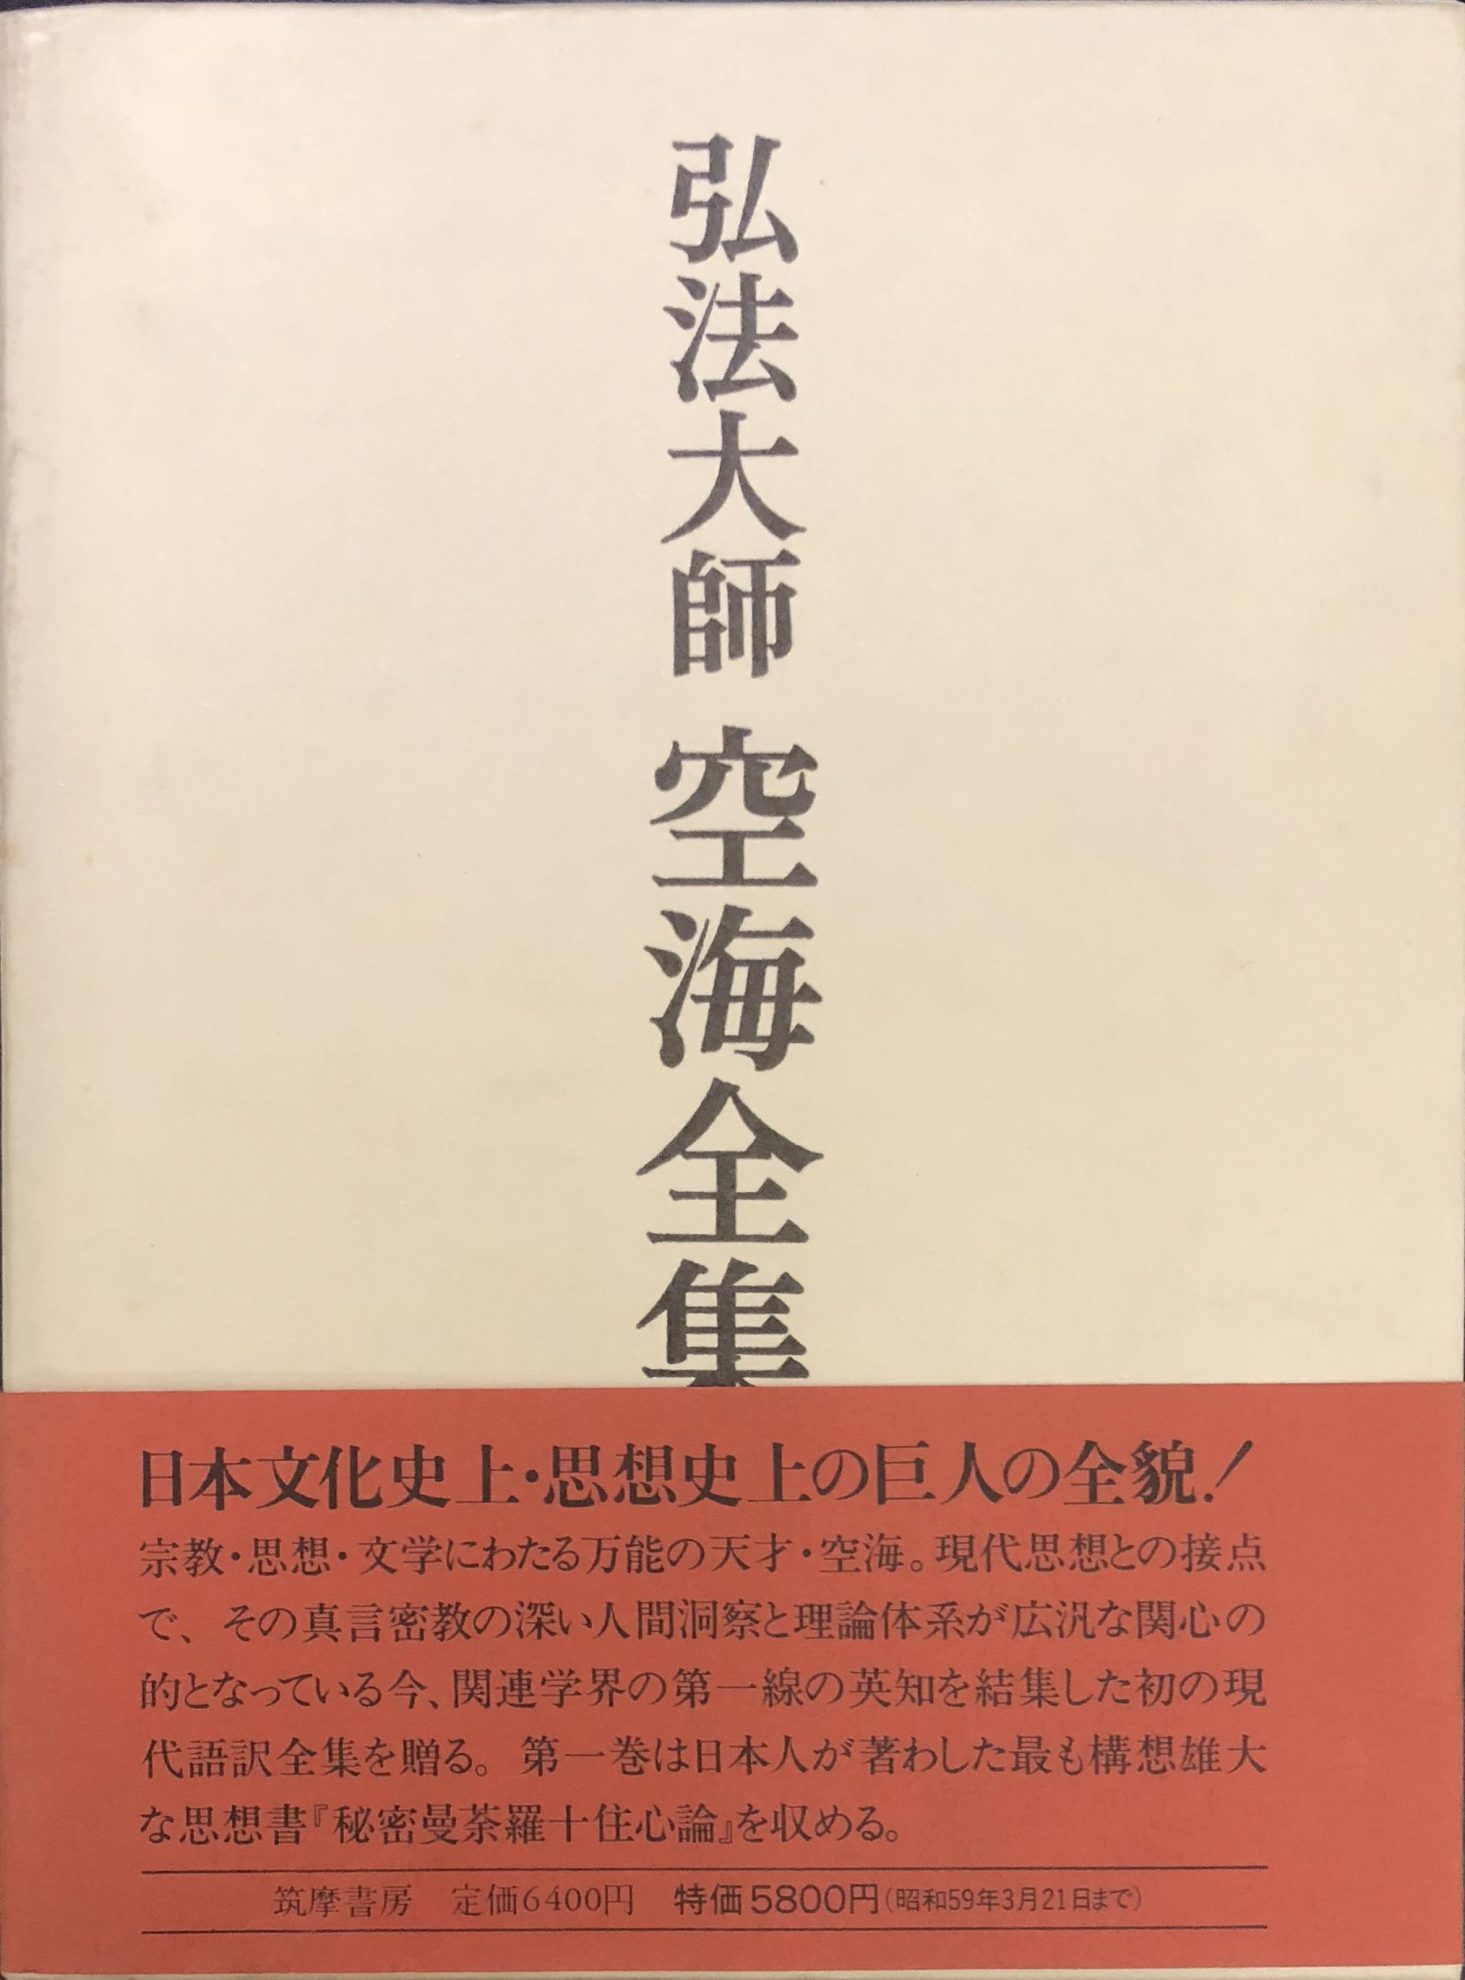 弘法大師空海全集』ほか仏教関係の古本を出張買取いたしました | 東京 